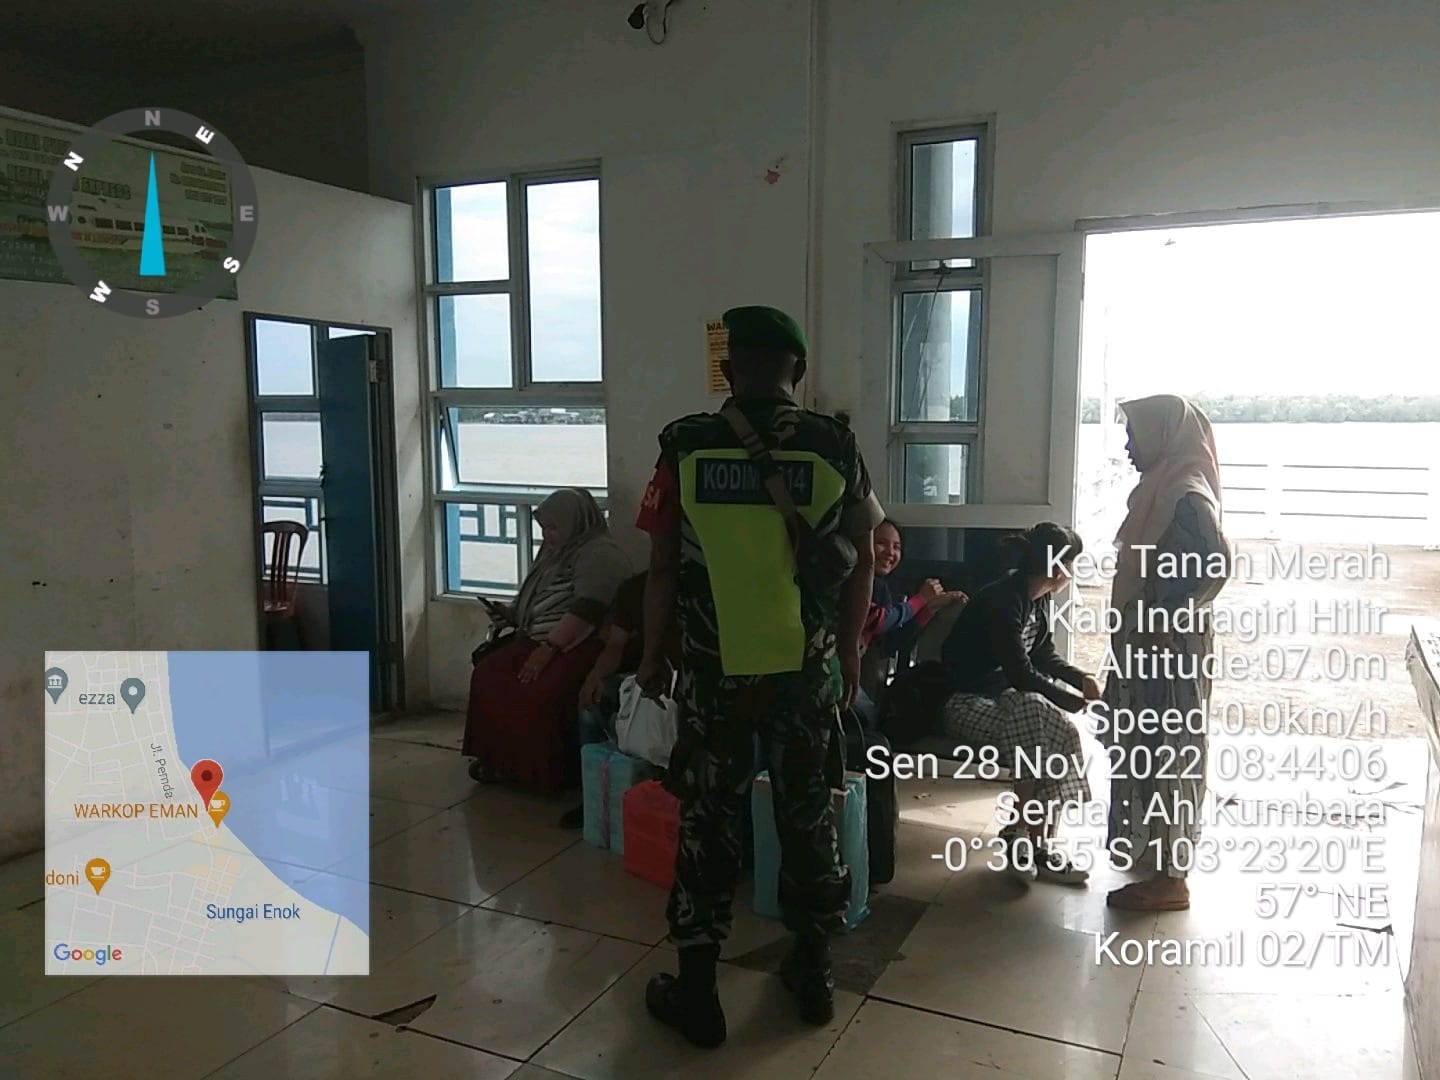 Serda AH Kumbara Anggota Koramil 02/TM Himbau Warga Patuhi Protkes di Pelabuhan Kuala Enok 